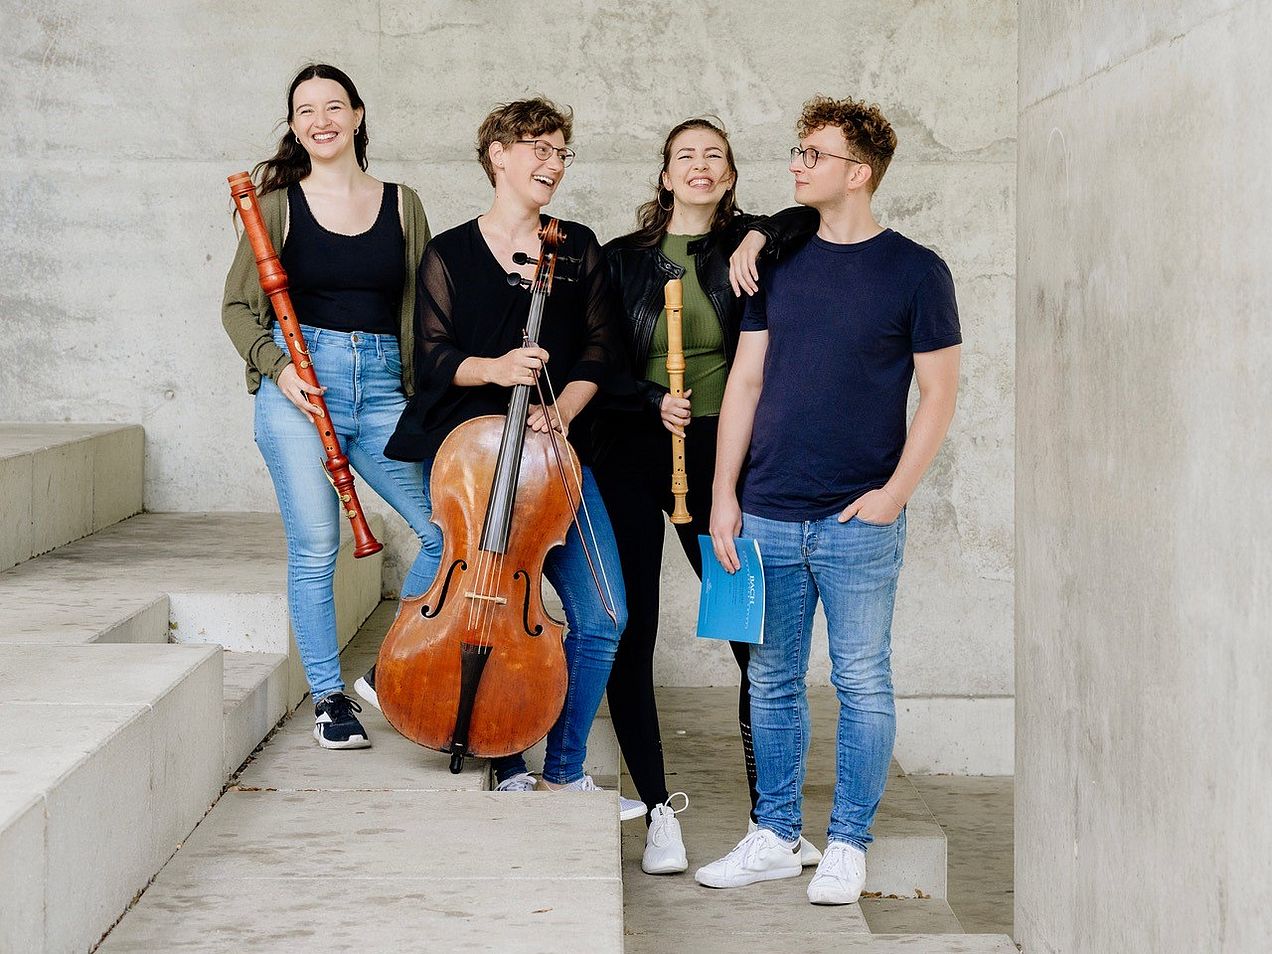 Die vier Mitglieder des Ensembles (Tabea Wink und Marie Erndl (Blockflöten), Anna Maria Rudolph (Cello) und Dominik Heidl (Cembalo))  stehen nebeneinander mit ihren Instrumenten auf Beton-Stufen und lachen. 